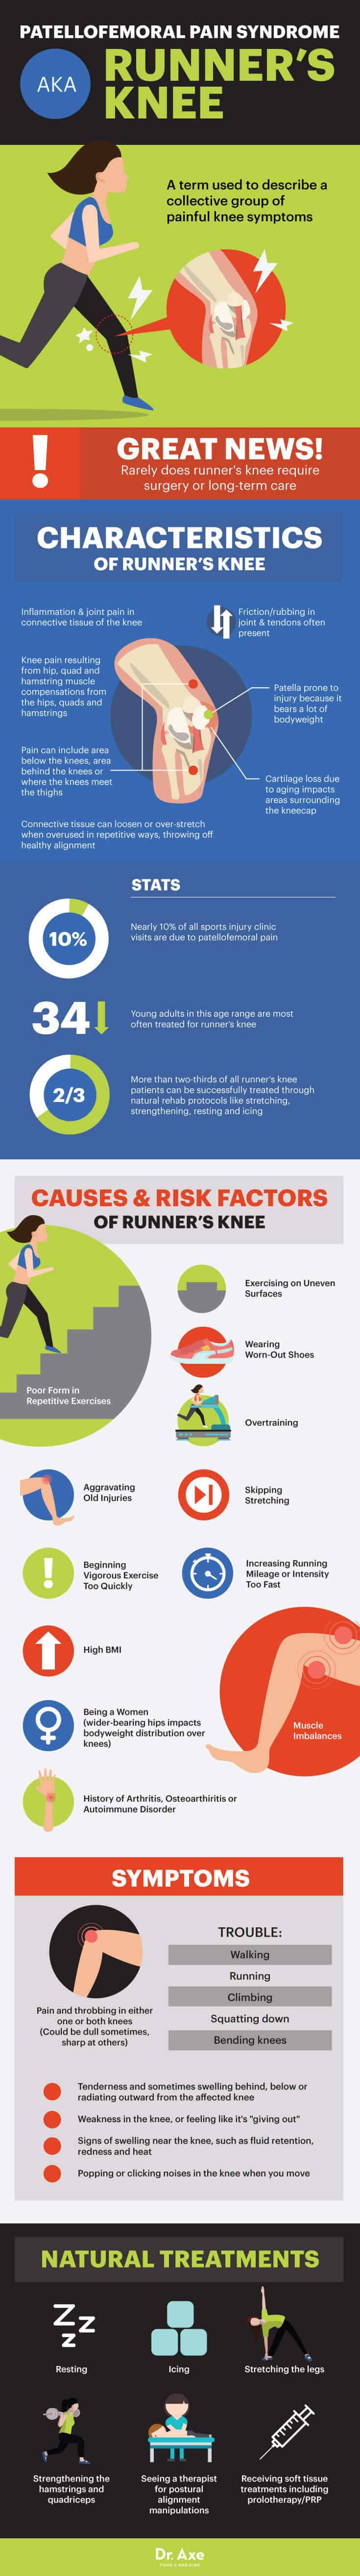 Runner's knee - Dr. Axe